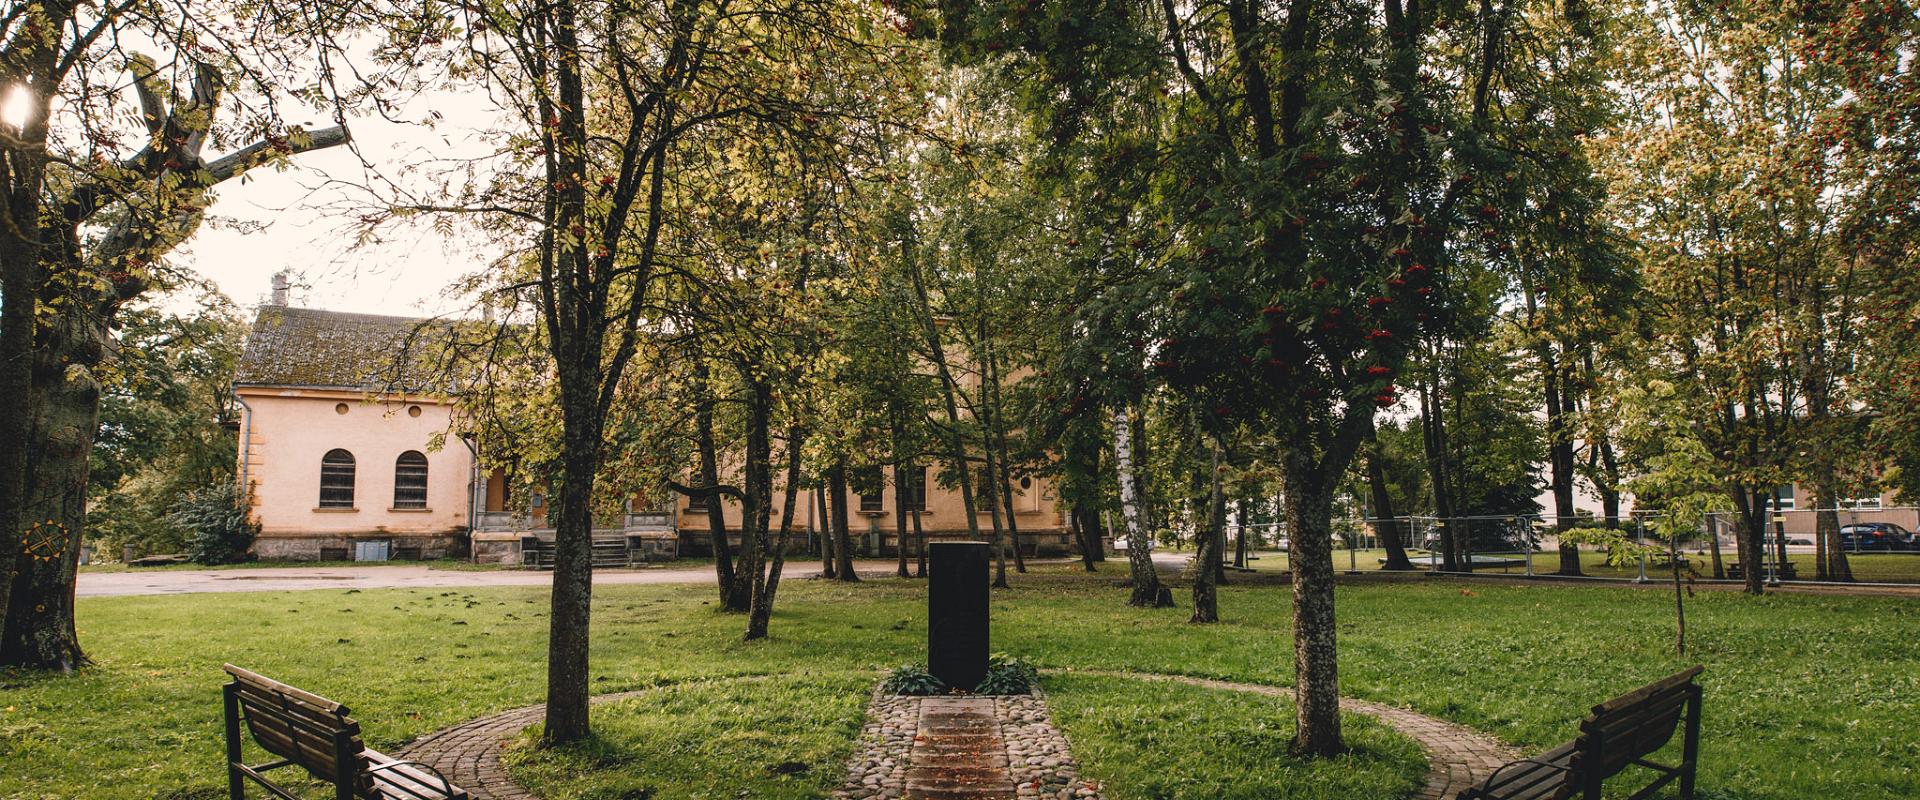 Das Denkmal für die Verfolgten des sowjetischen Regimes liegt im Instrumentenpark (pillipark) in Viljandi (dt. Fellin), zwischen der Johanneskirche un